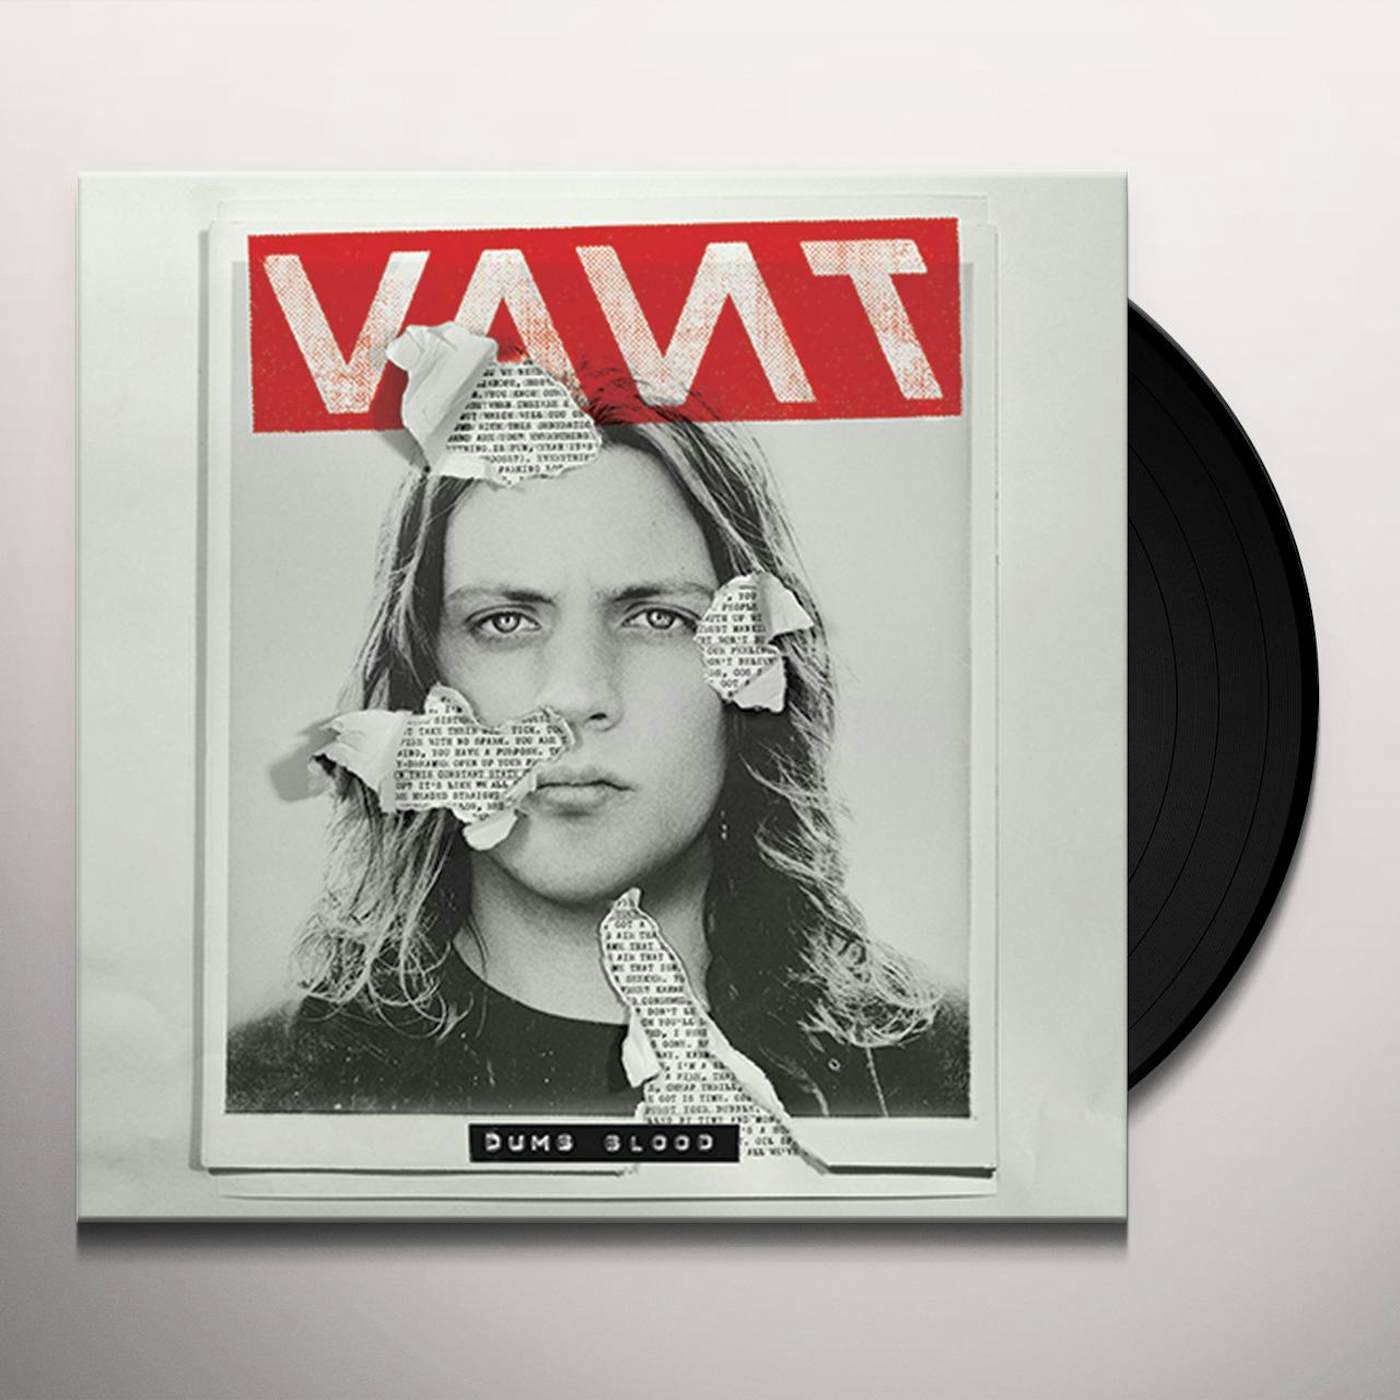 VANT DUMB BLOOD Vinyl Record